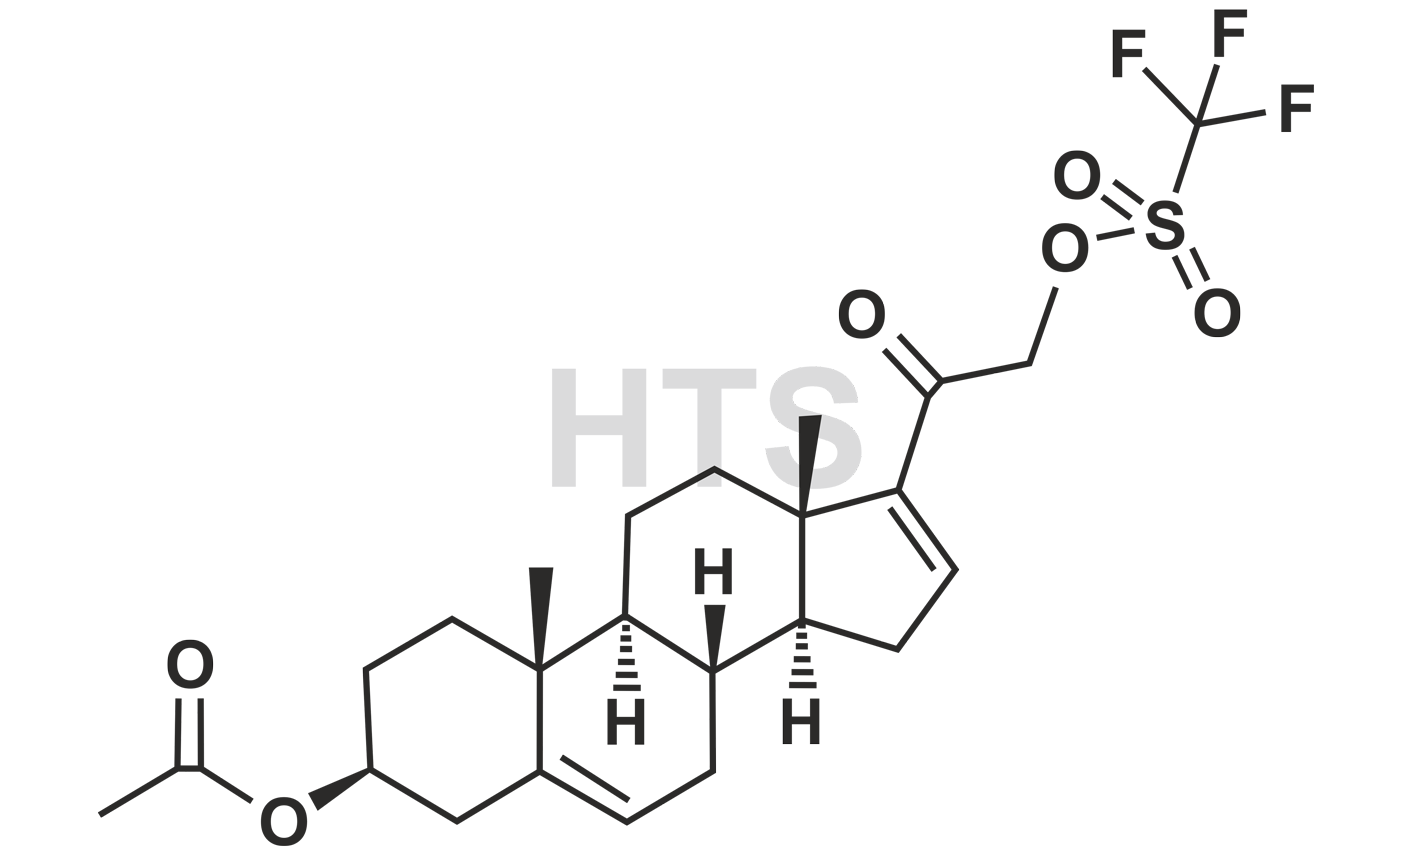 Abiraterone Pregnenolone-16-Ene Acetate 21-Triflate